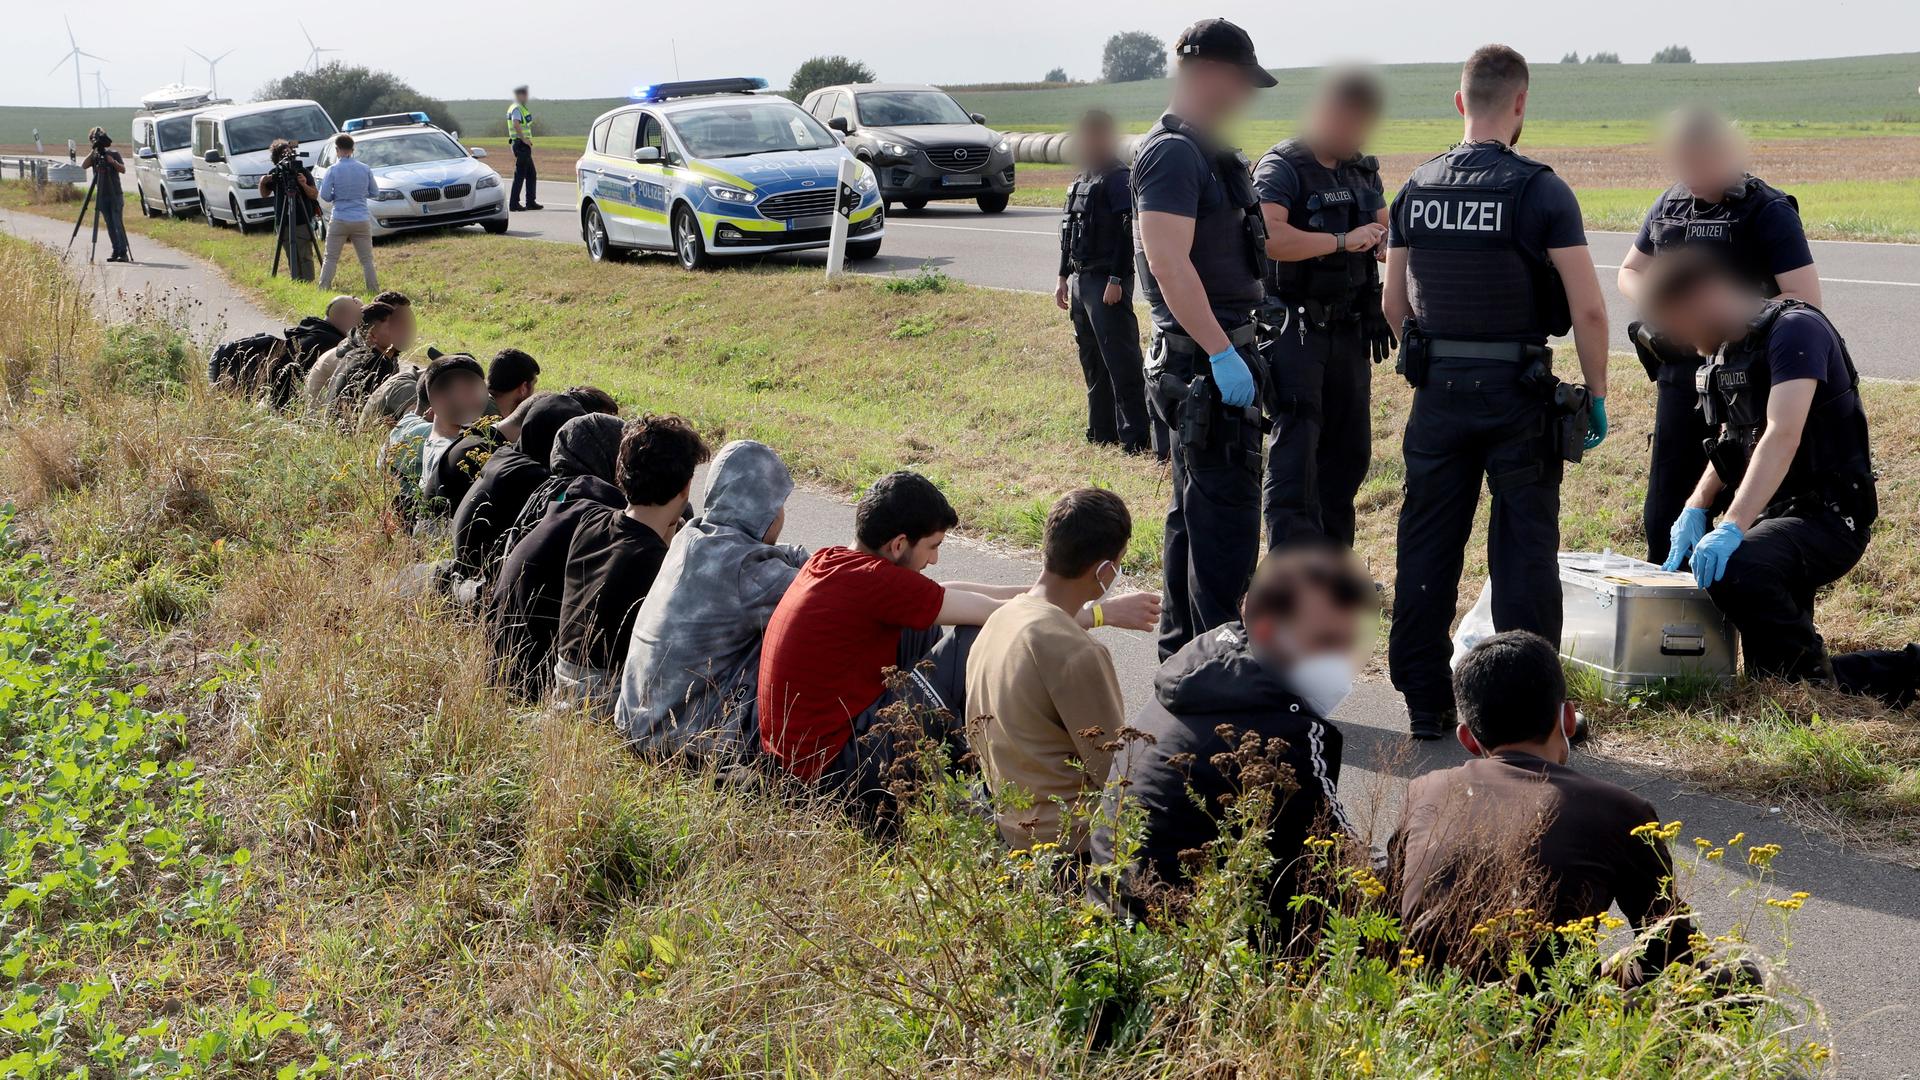 Eine Gruppe von 18 Männern und einer Frau, nach eigenen Angaben aus Syrien, wird von der Bundespolizei in der Nähe der polnischen Grenze aufgegriffen. Die Zahl unerlaubter Einreisen über die polnische Grenze hat nach Angaben der Bundespolizei zuletzt zugenommen.